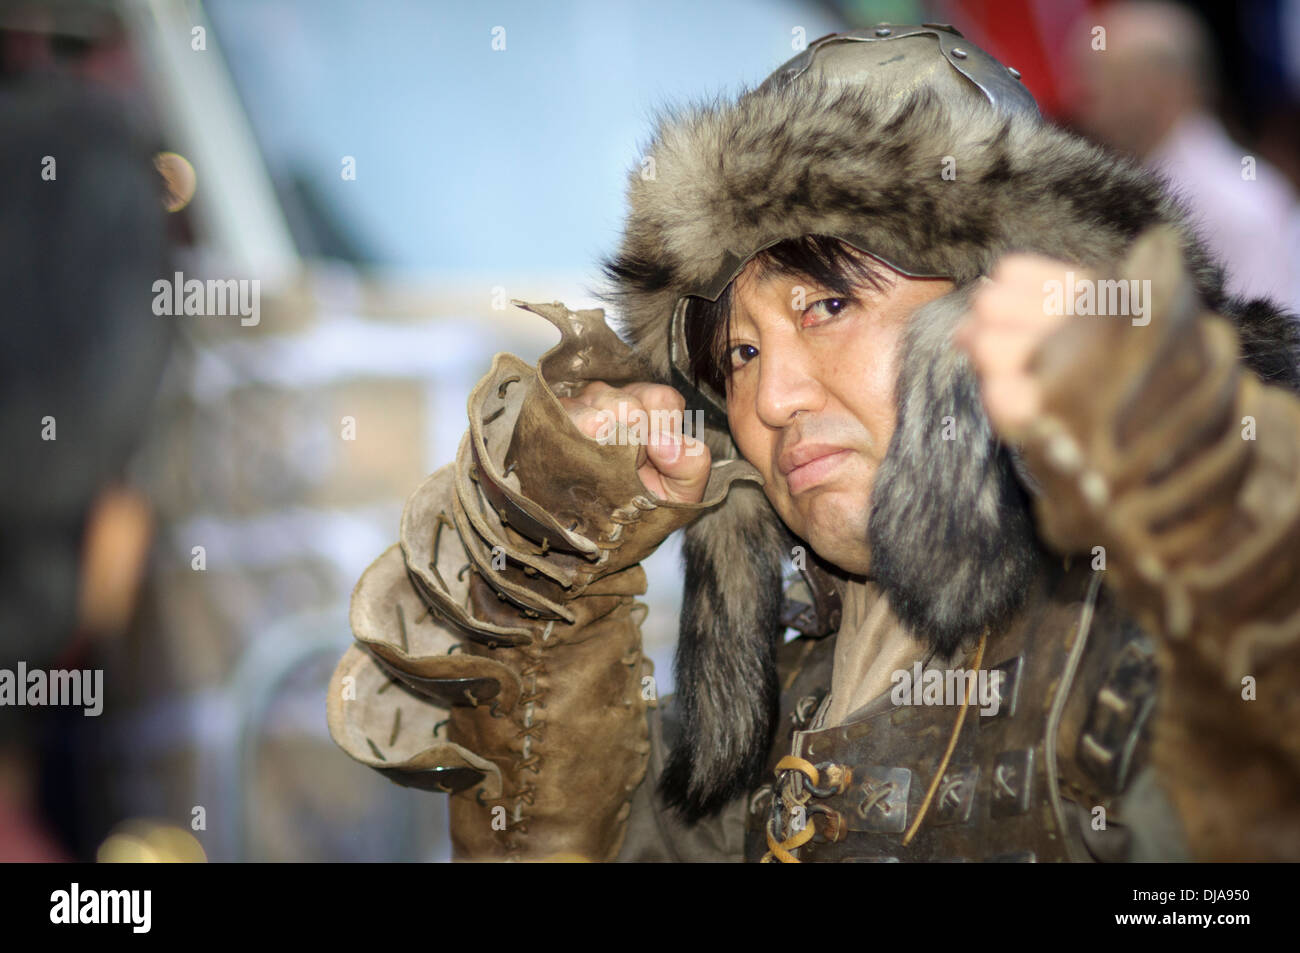 Südkoreanische Mann auffällig einer kämpferischen Haltung beim mit traditionellen Leder Rüstung (Rüstung), einschließlich Pelzmütze für kalte Klimazonen Stockfoto